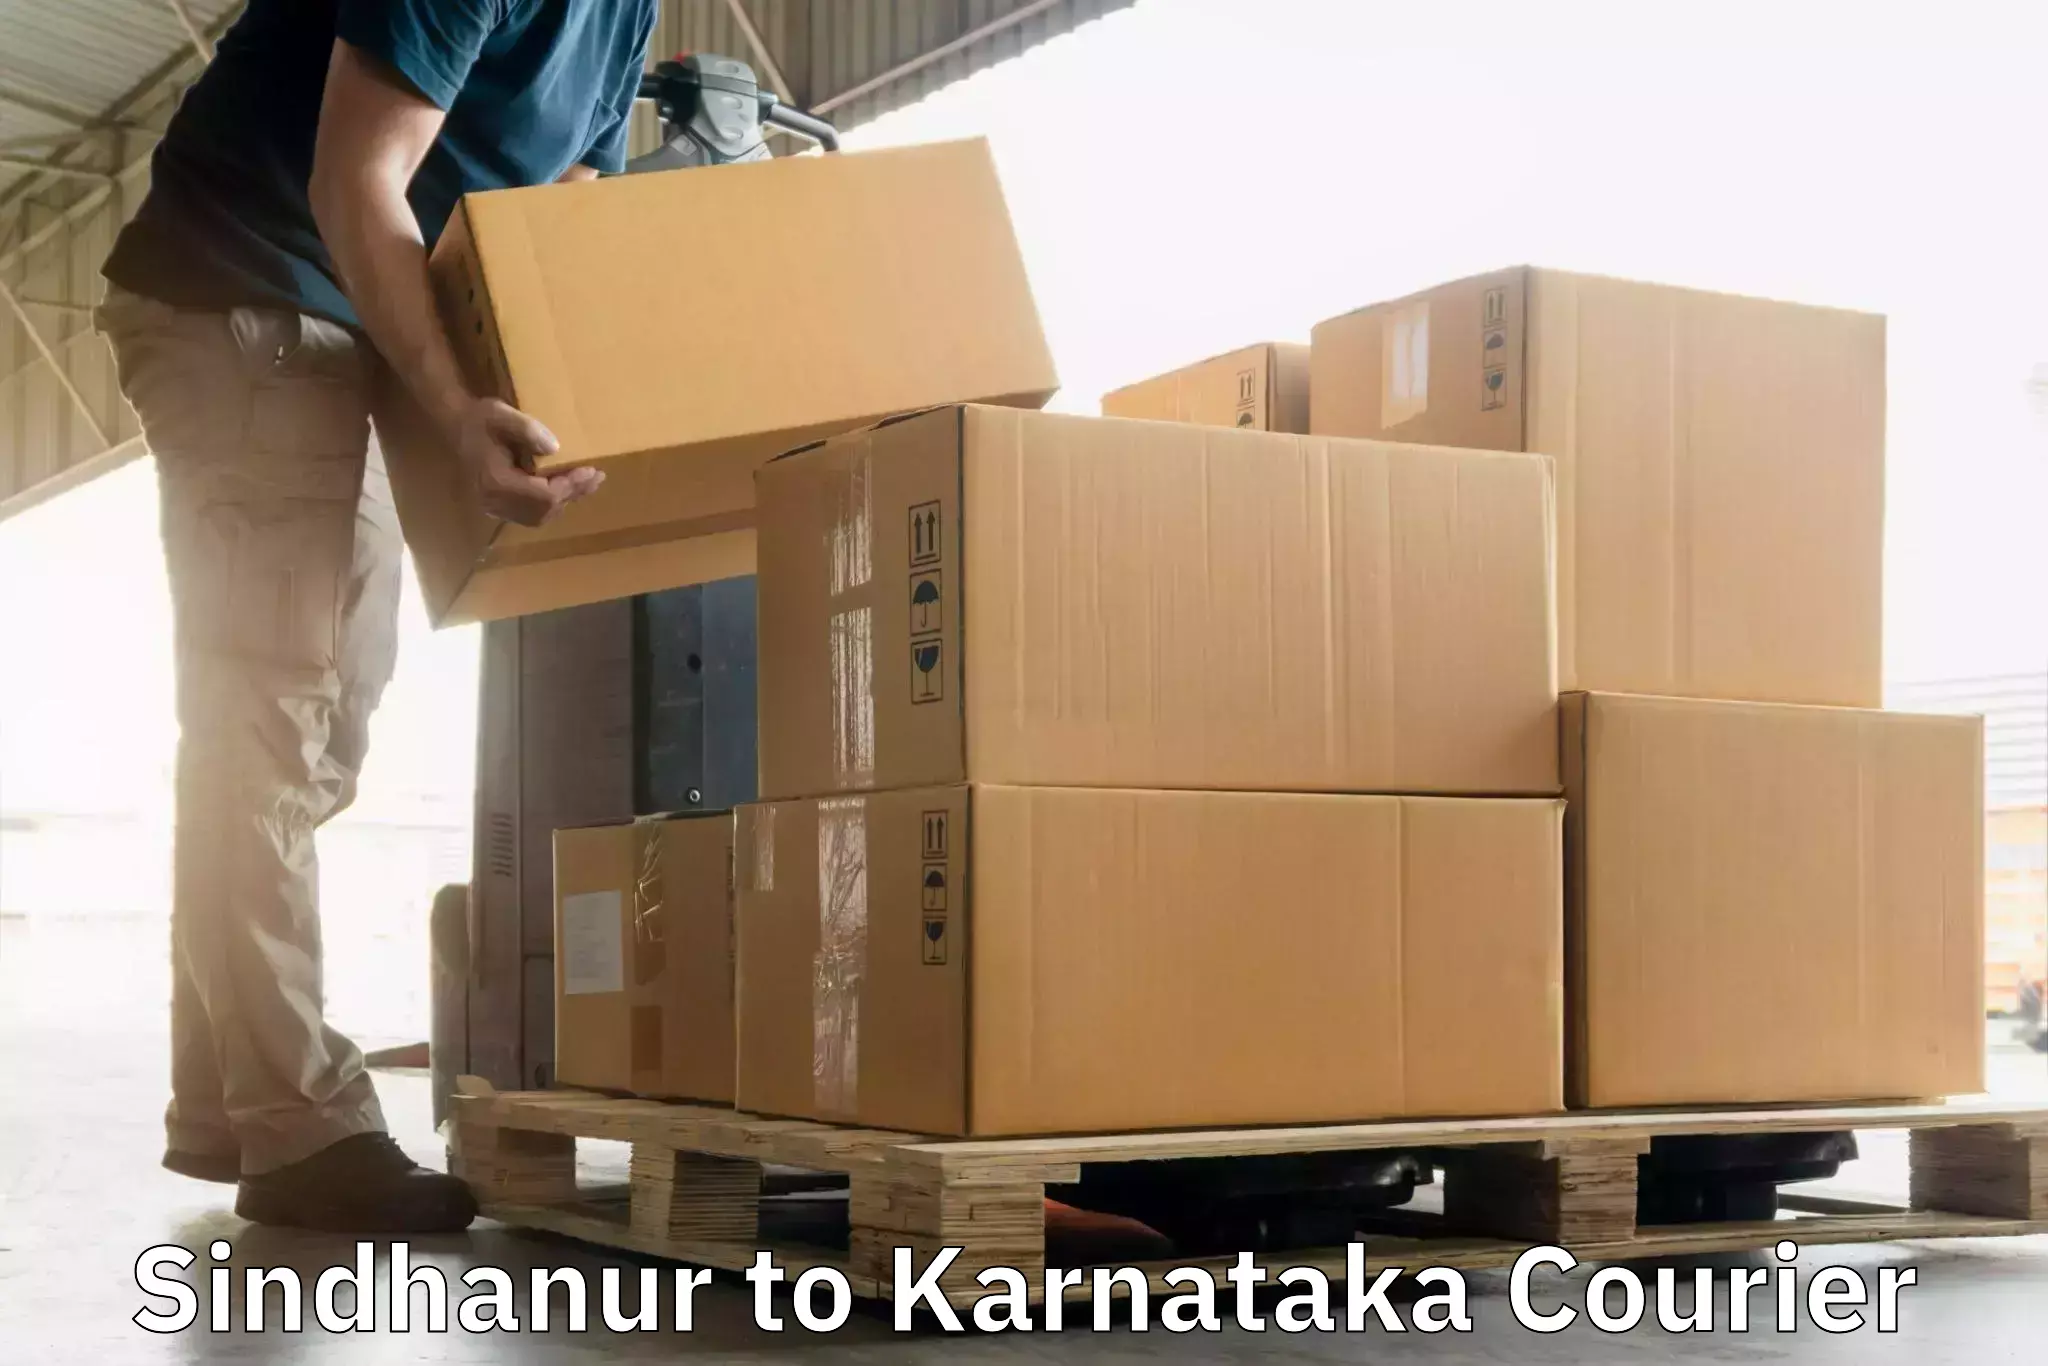 Express mail solutions Sindhanur to Karnataka